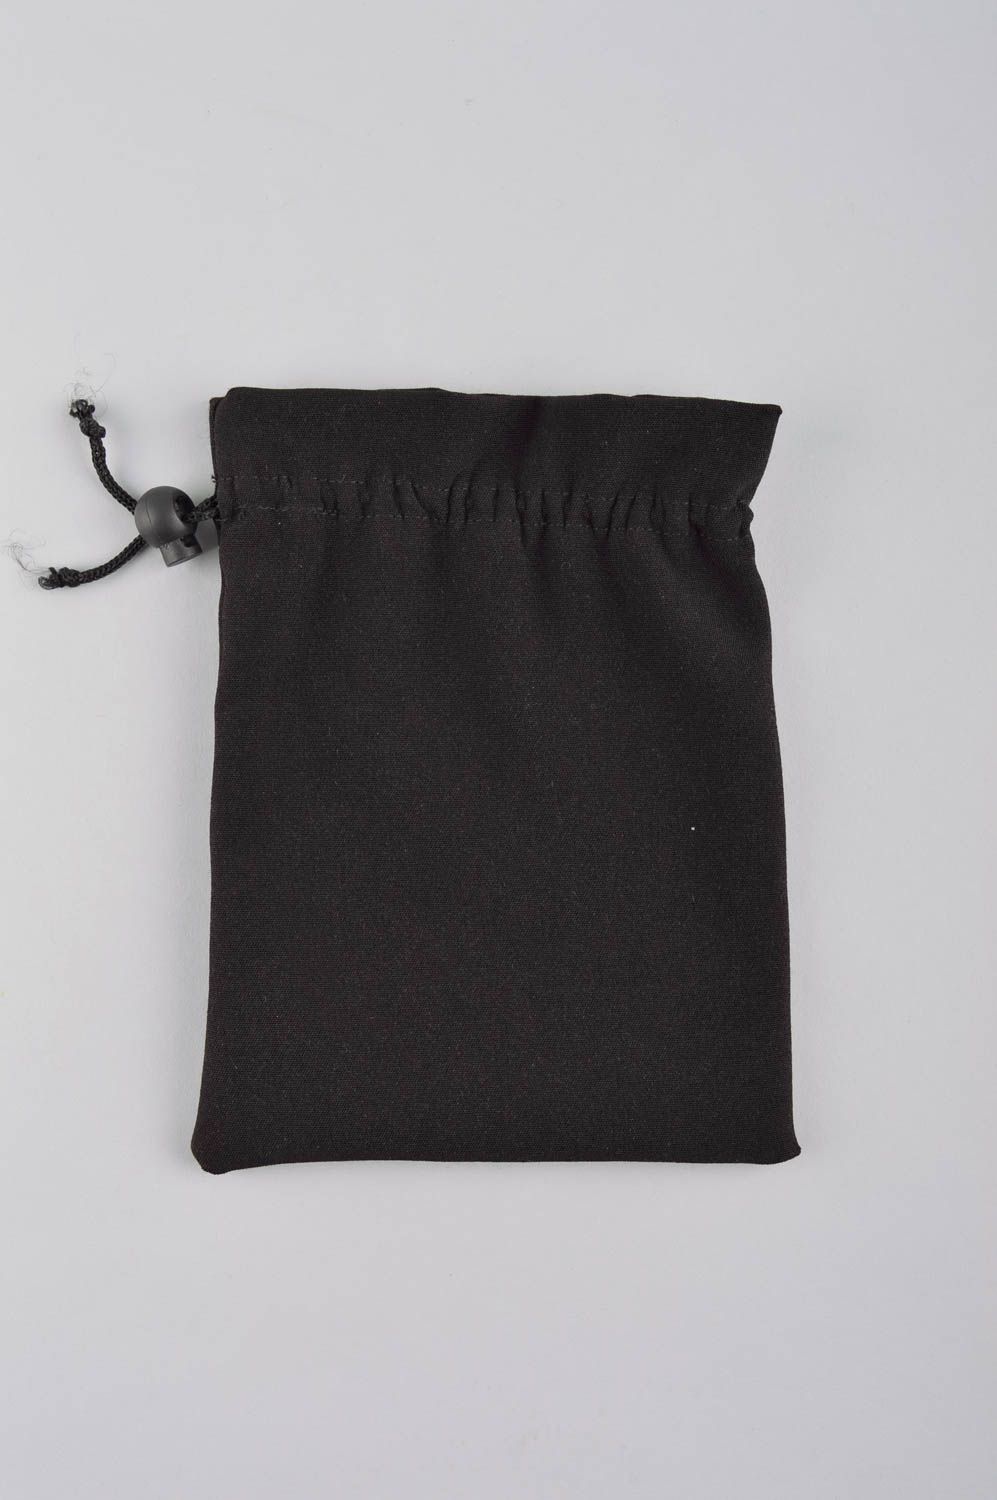 Кошелек из ткани ручной работы мешочек для монет женский кошелек с вышивкой фото 3